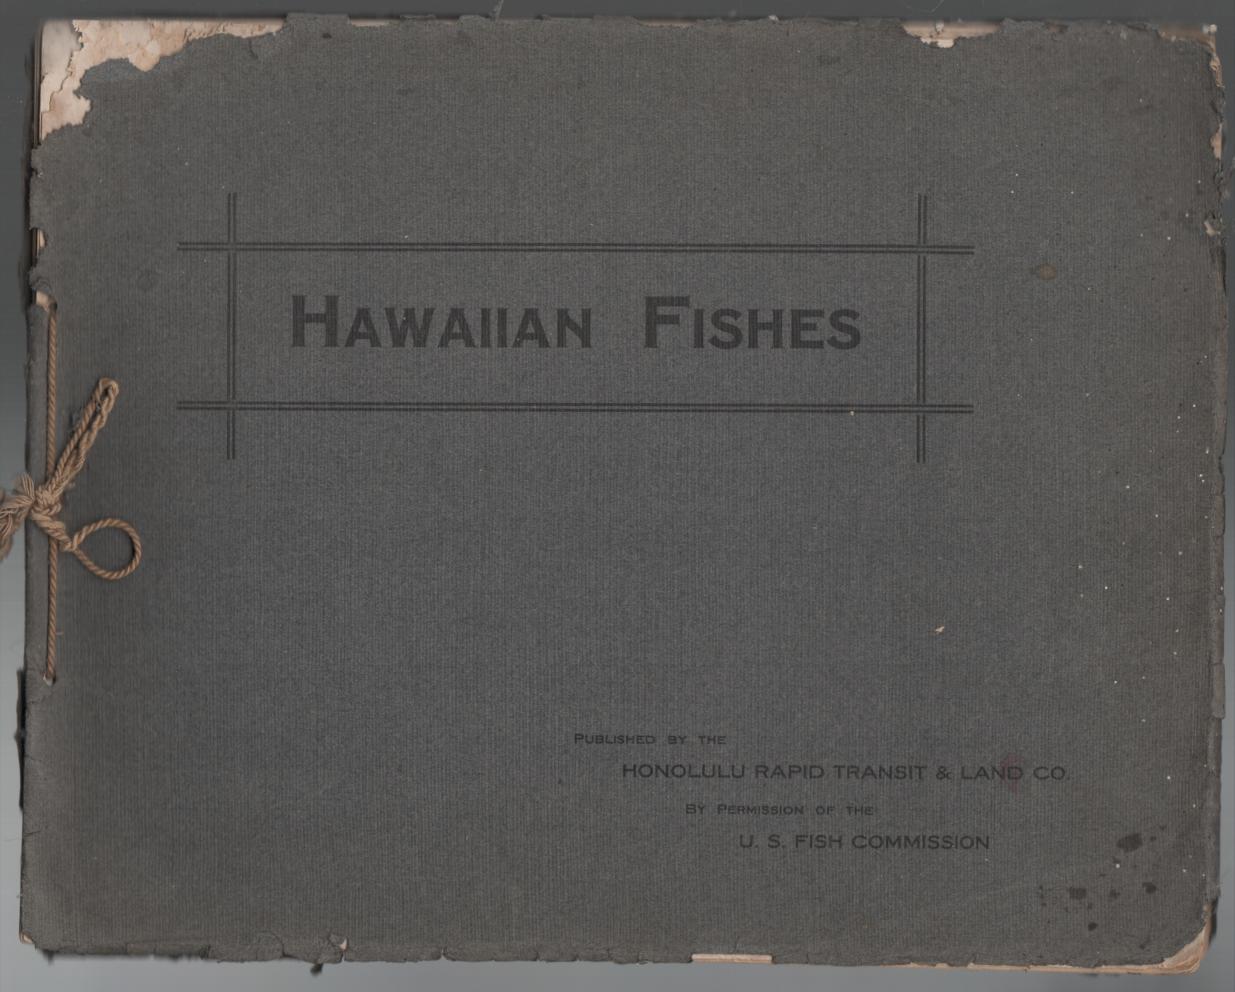 HONOLULU AQUARIUM. - Hawaiian Fishes.